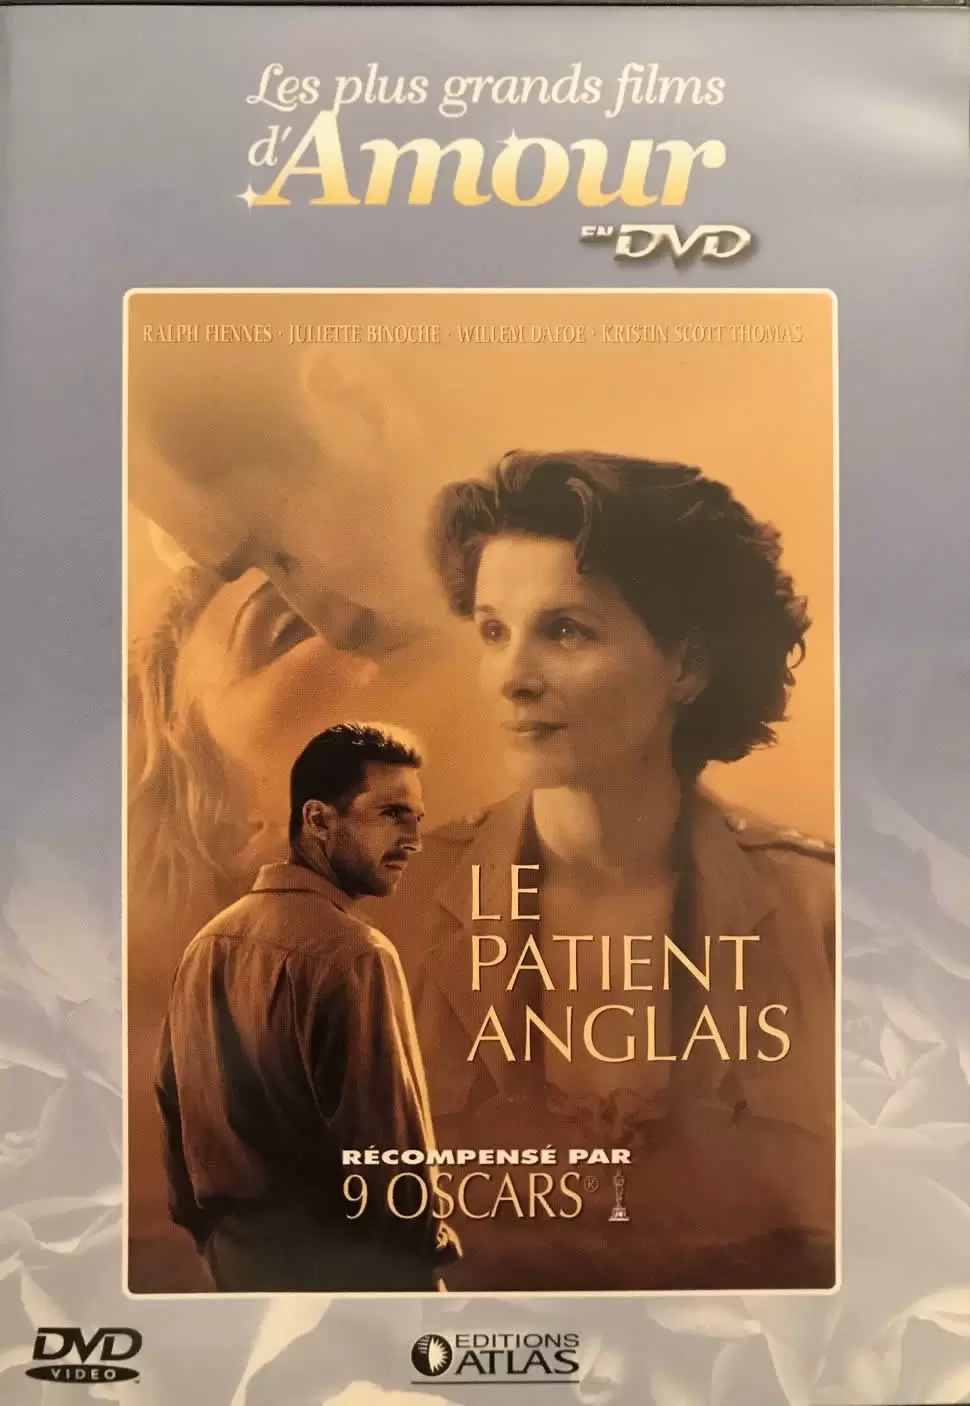 Les plus grands films d\'amour en DVD - Le patient anglais